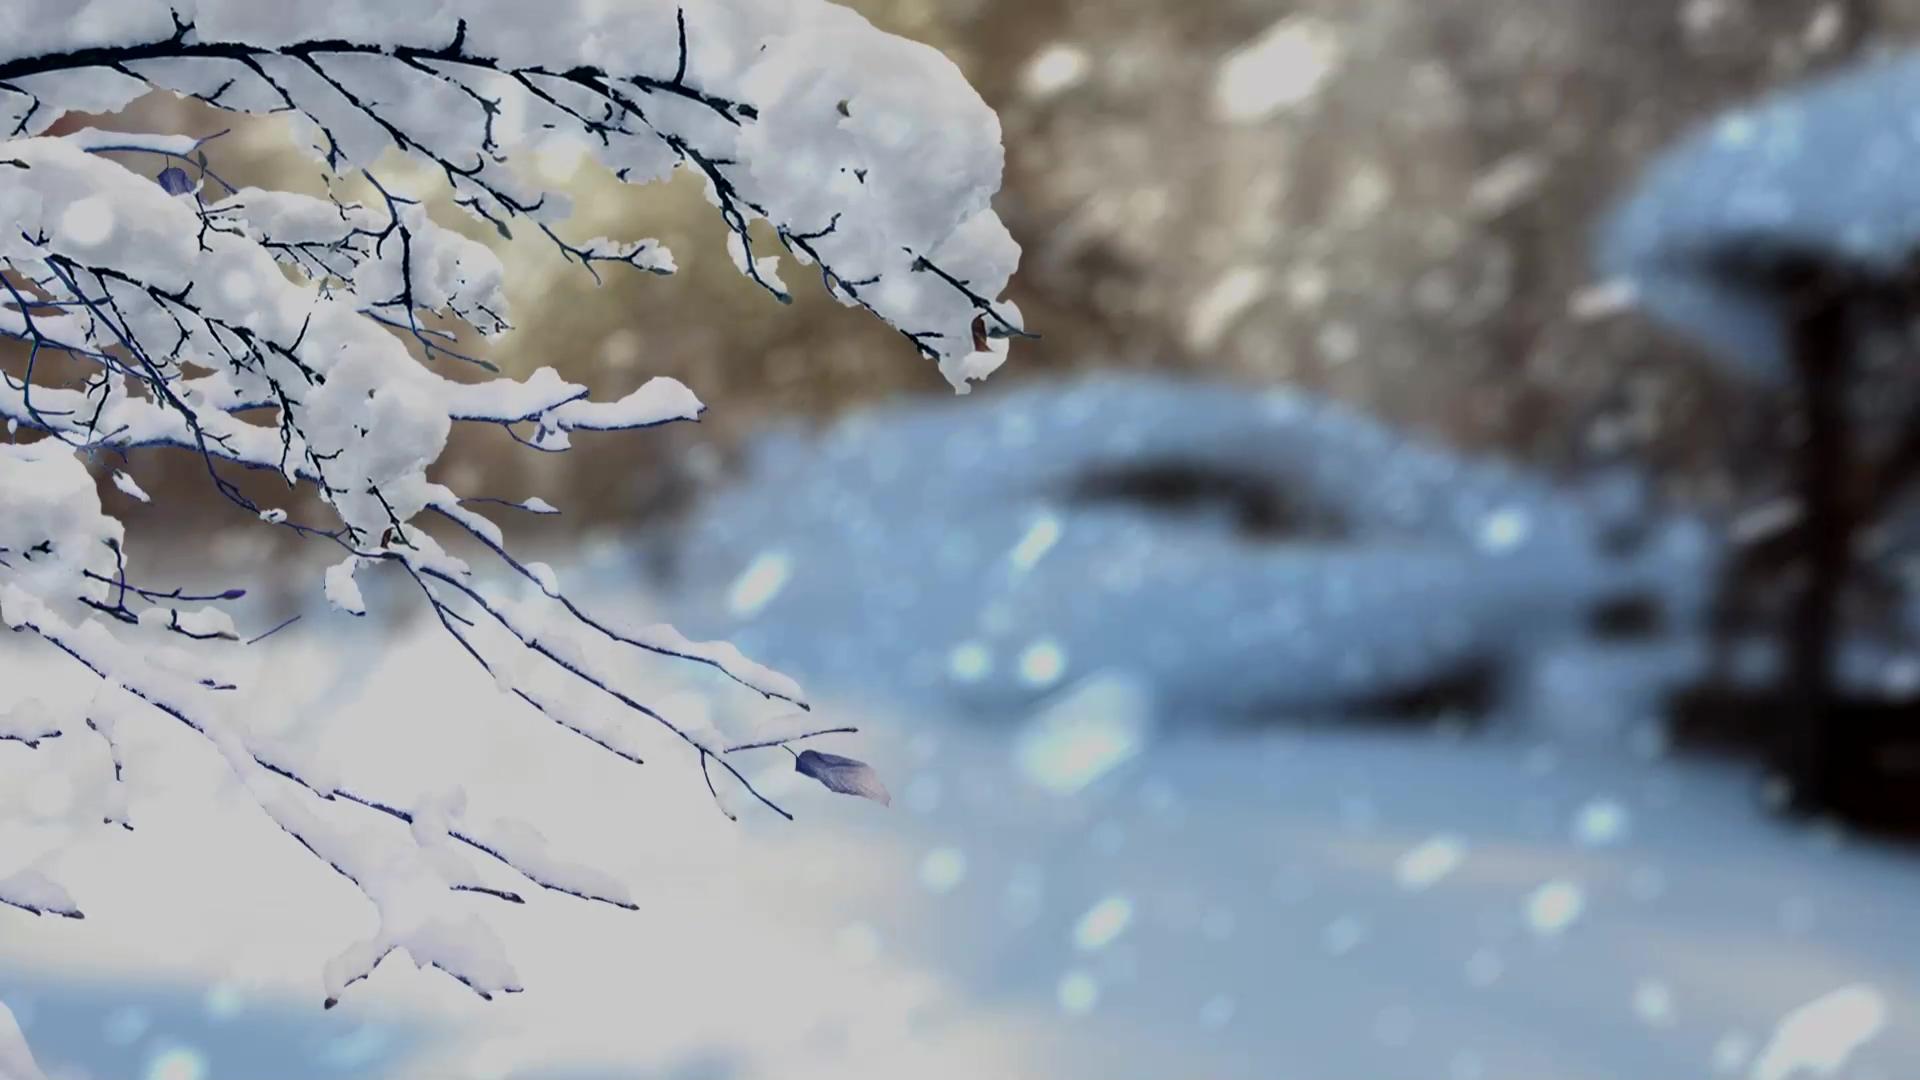 唯美冬天雪景背景视频素材 Mp4格式 潮点视频shipin5 Com